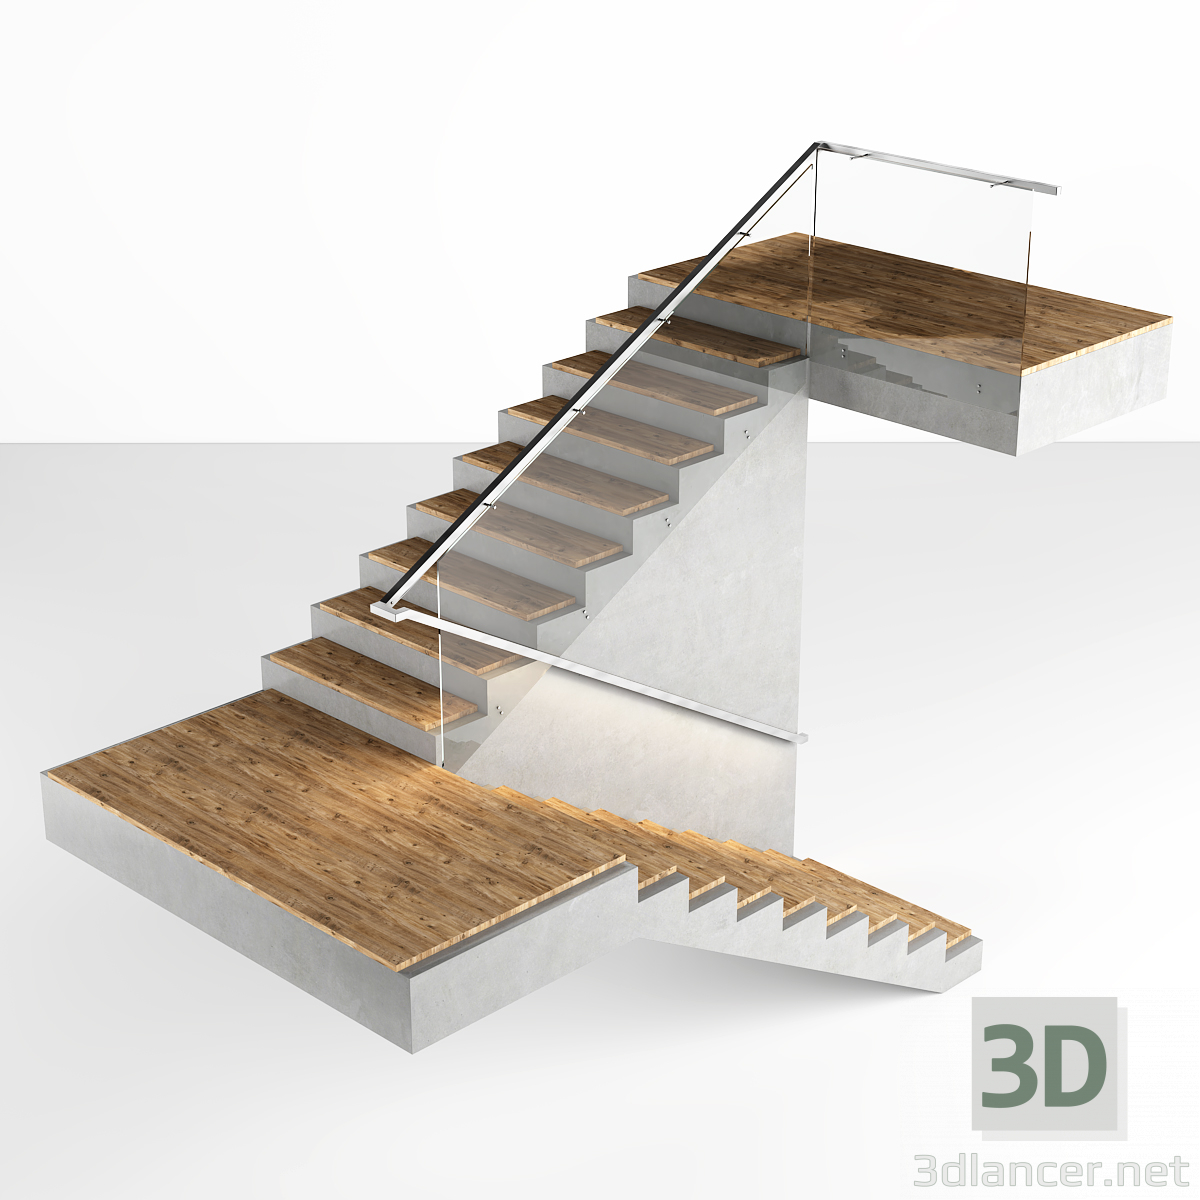 3d Model Stairs Free 3d Models For 3d Editors Max 2015 Fbx